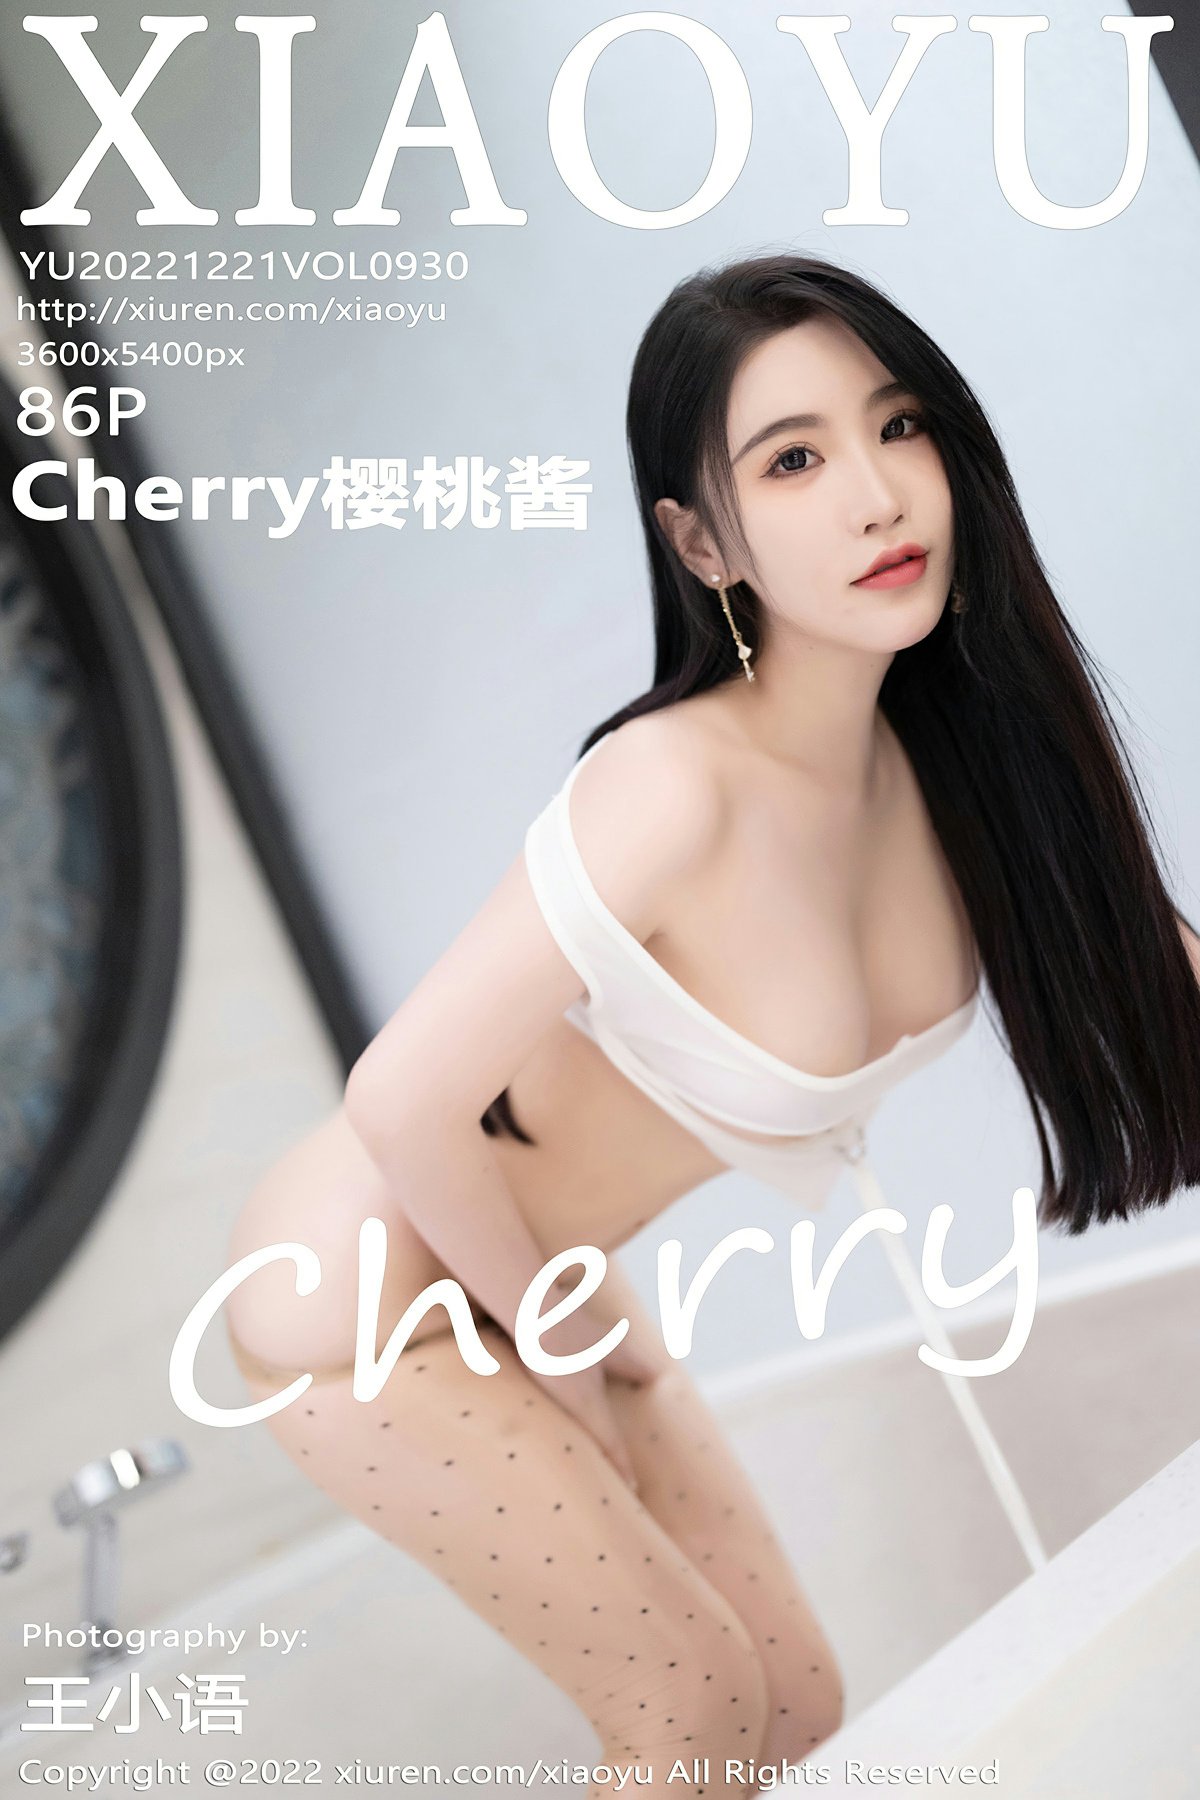 [XIAOYU语画界] 2022.12.21 VOL.930 Cherry樱桃酱 第1张